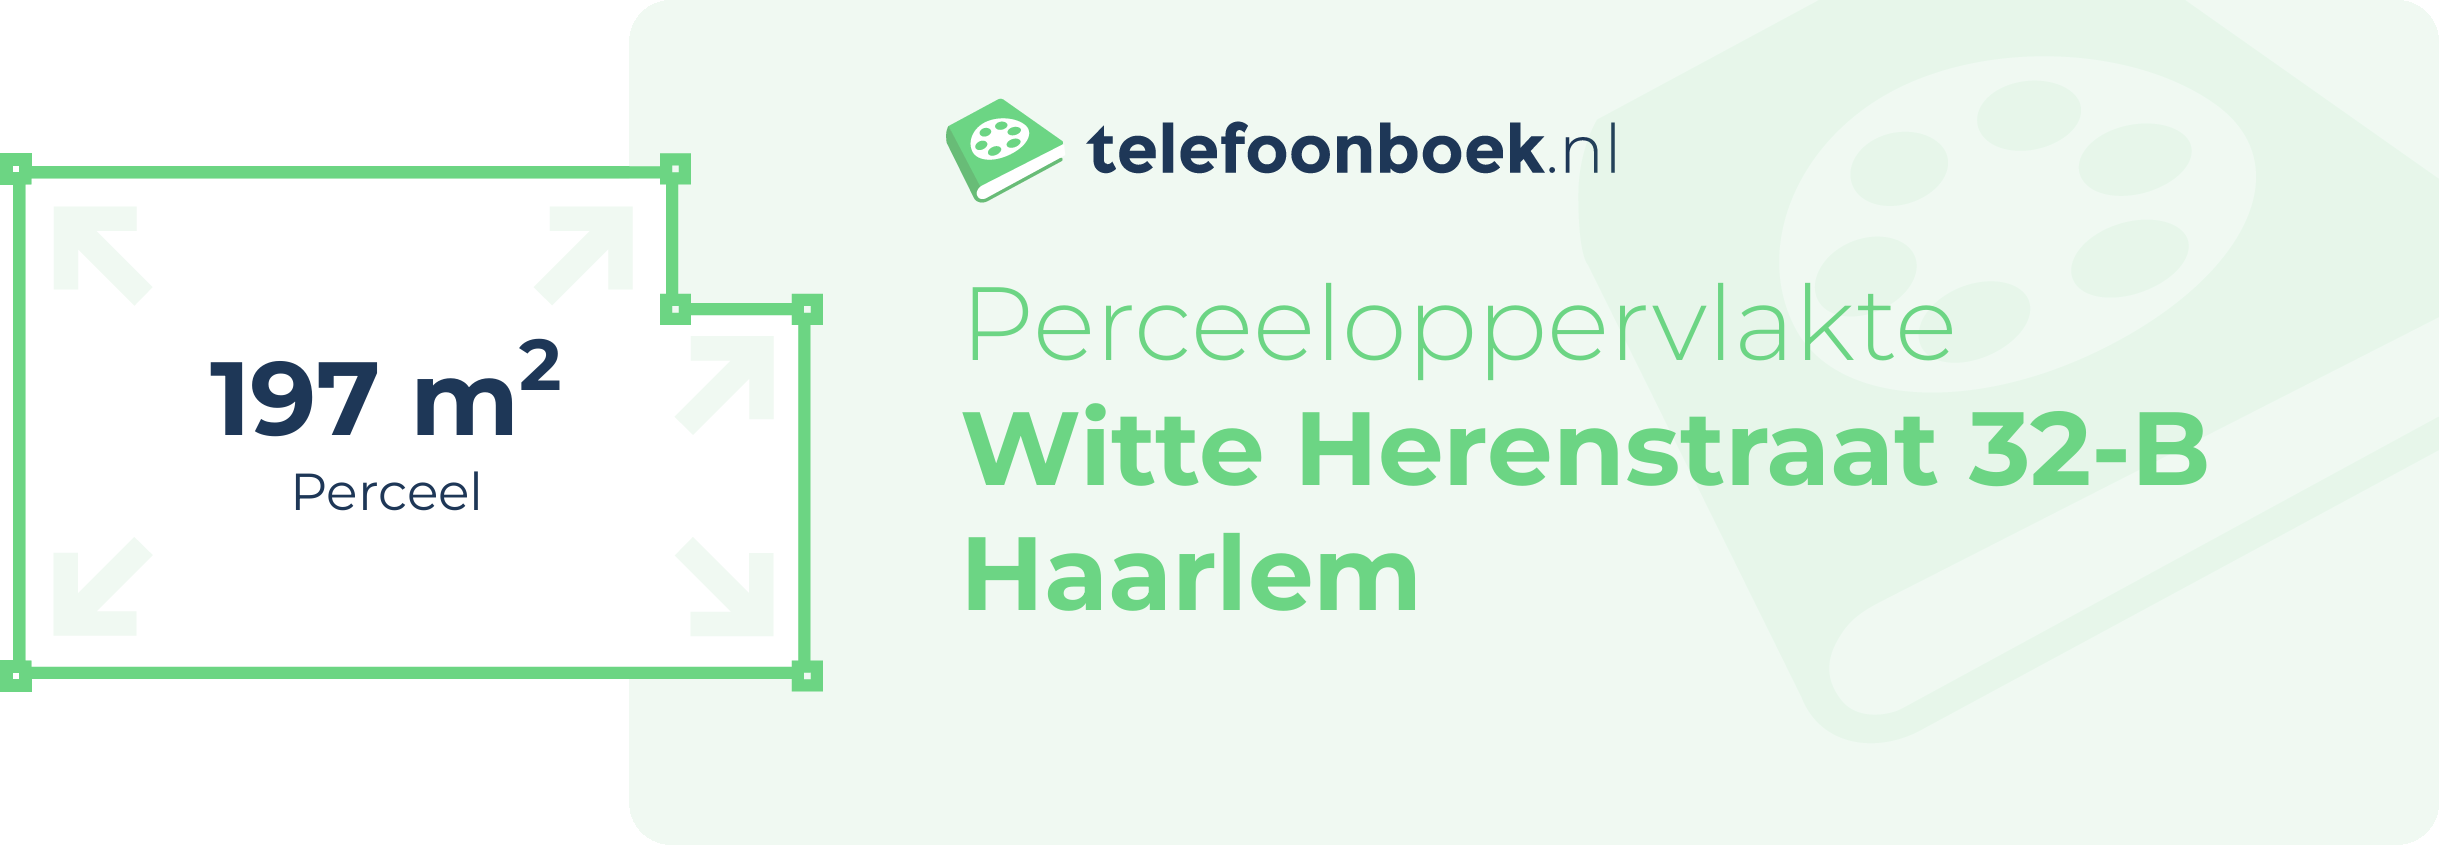 Perceeloppervlakte Witte Herenstraat 32-B Haarlem